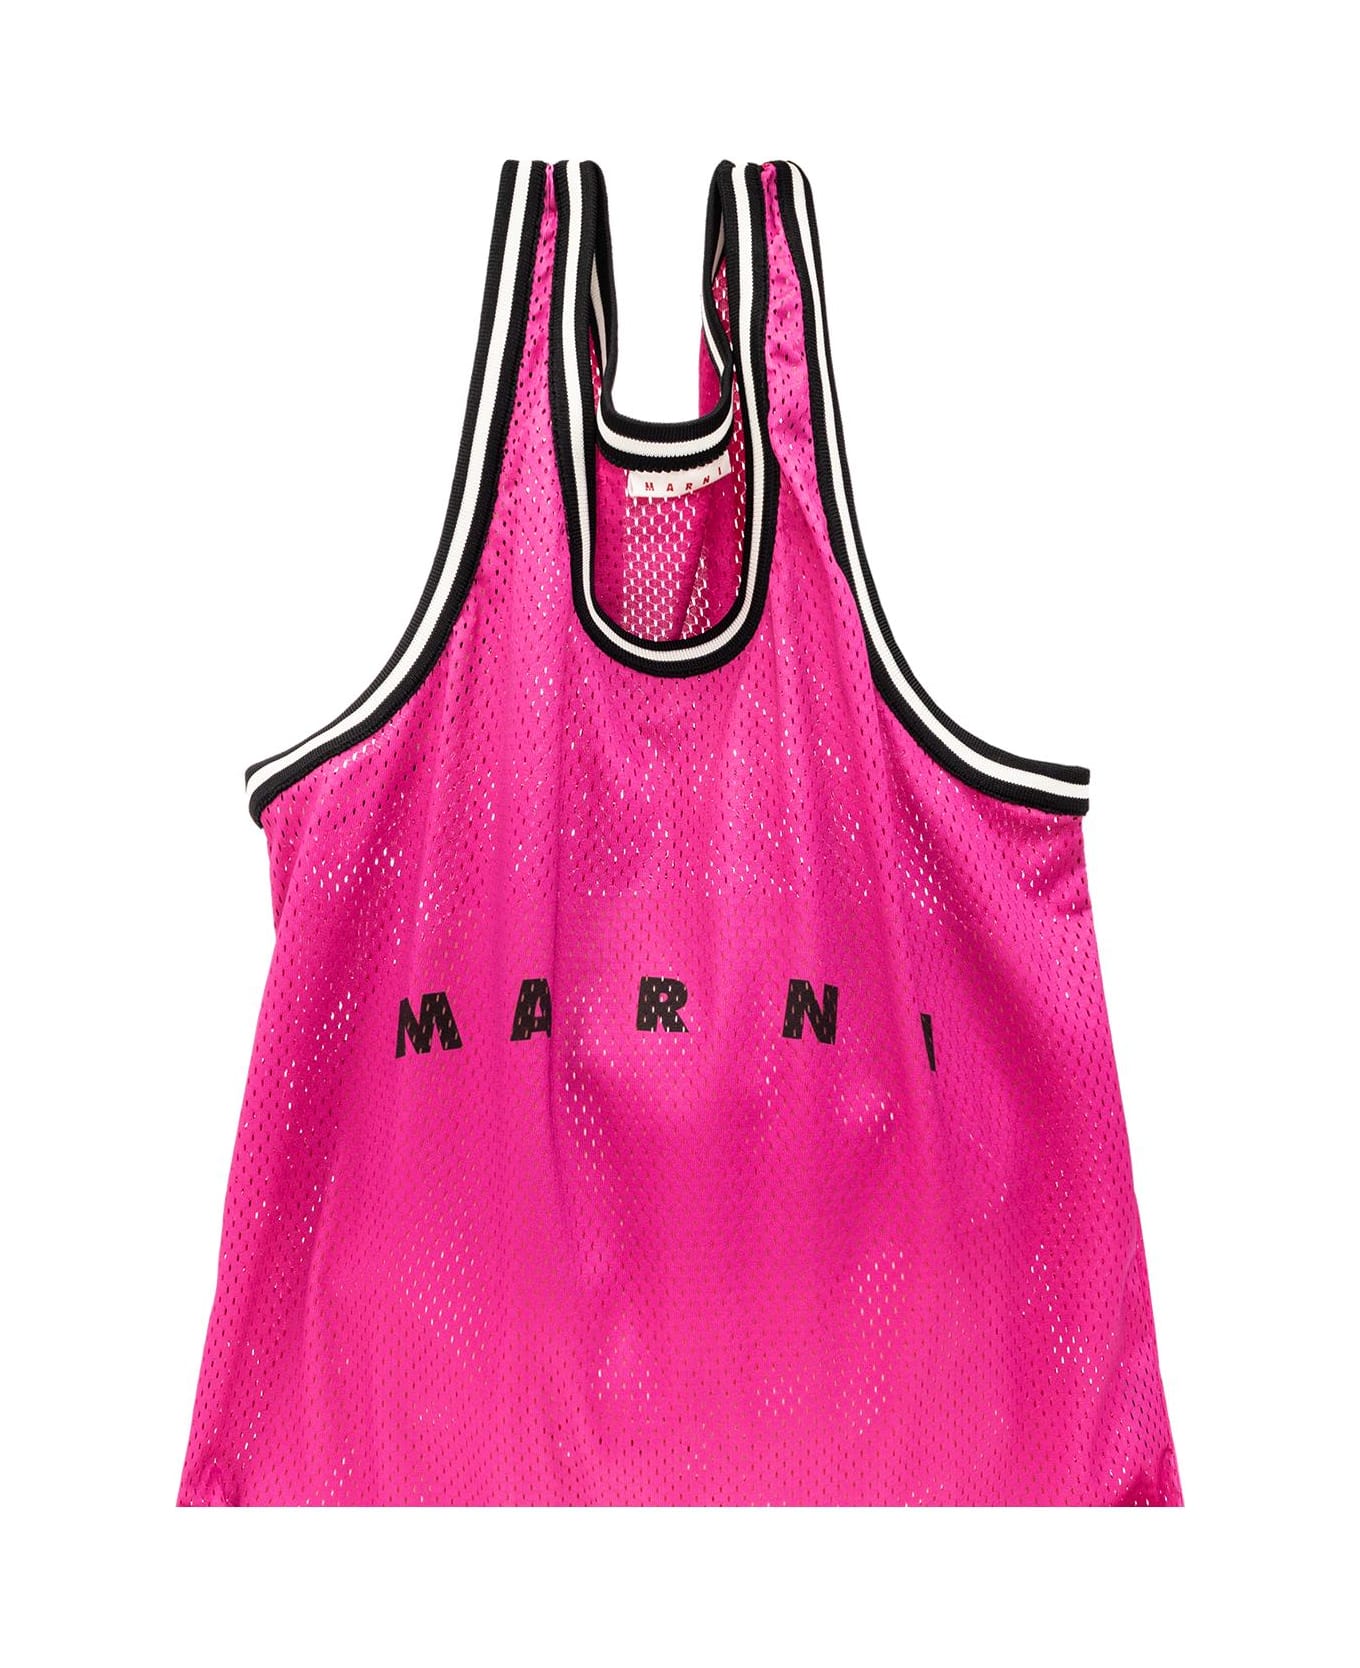 Marni Shopper Bag With Logo Marni トートバッグ